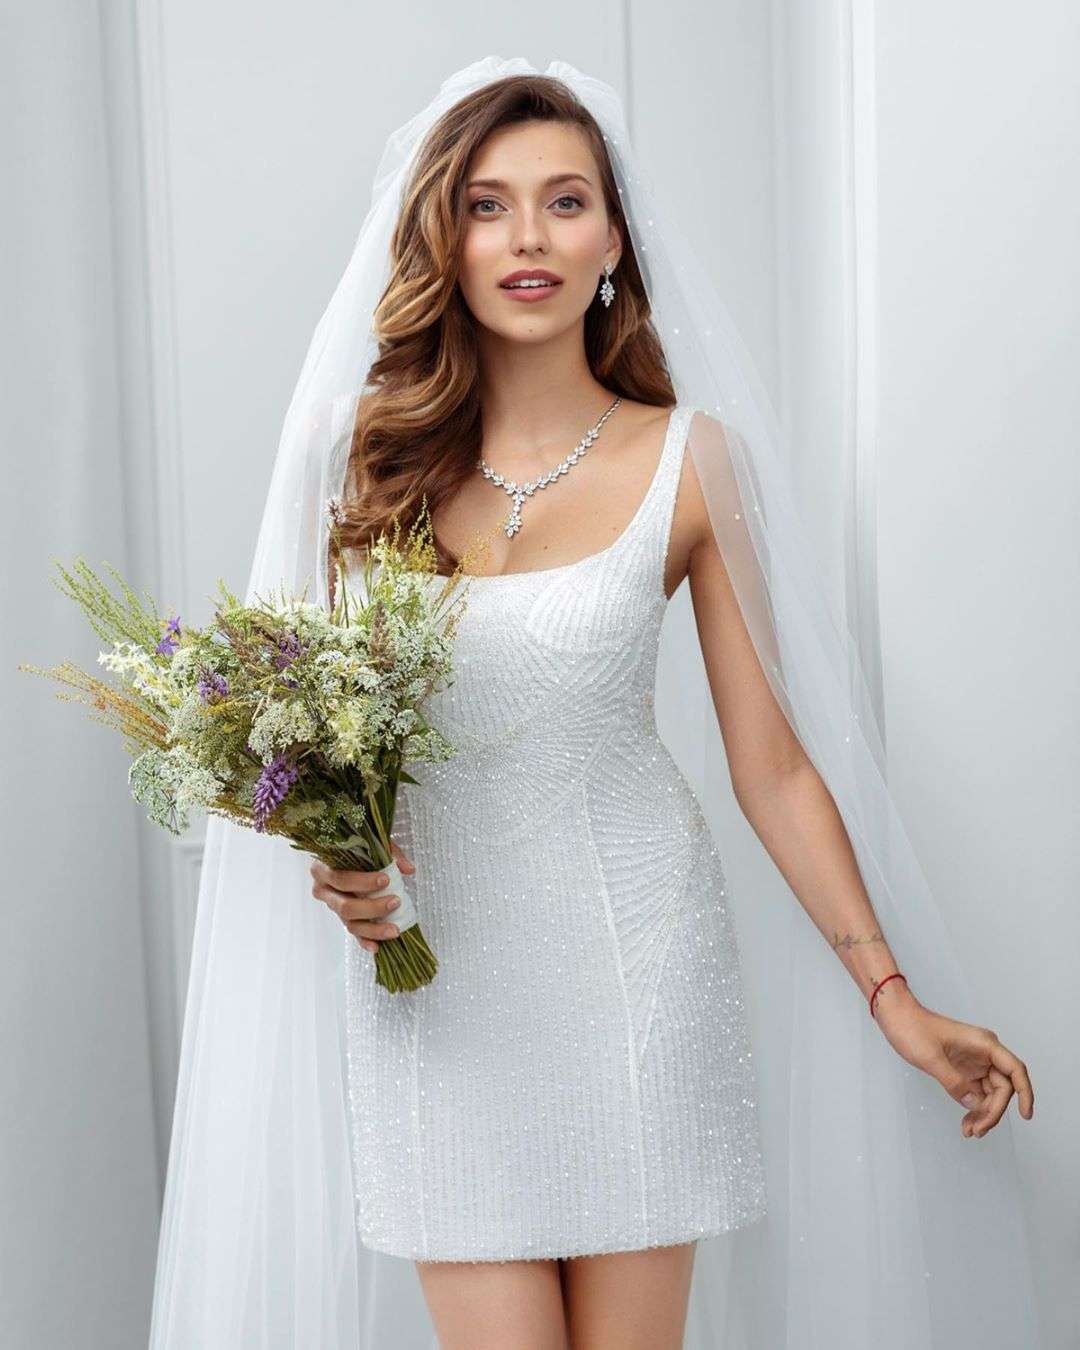 Регина Тодоренко в свадебном платье украсила обложку модного глянца - фото 441059